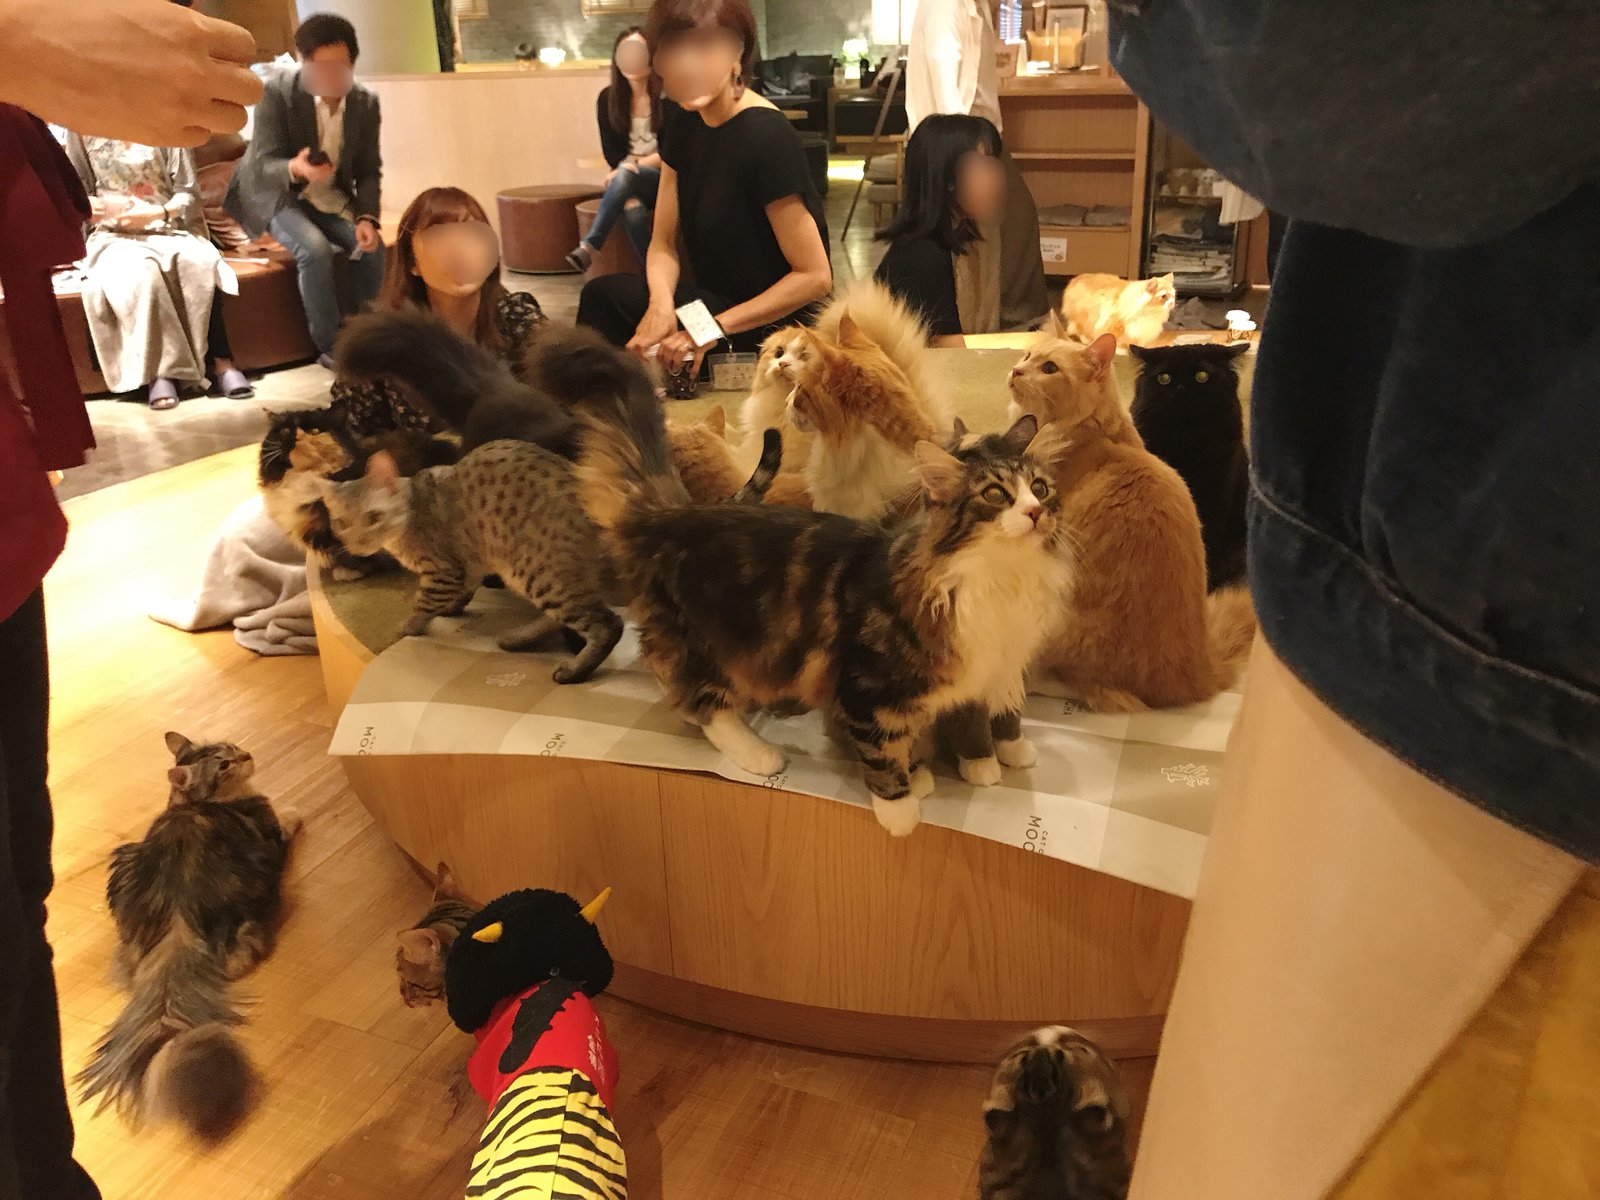 猫カフェMoCHA 新宿店